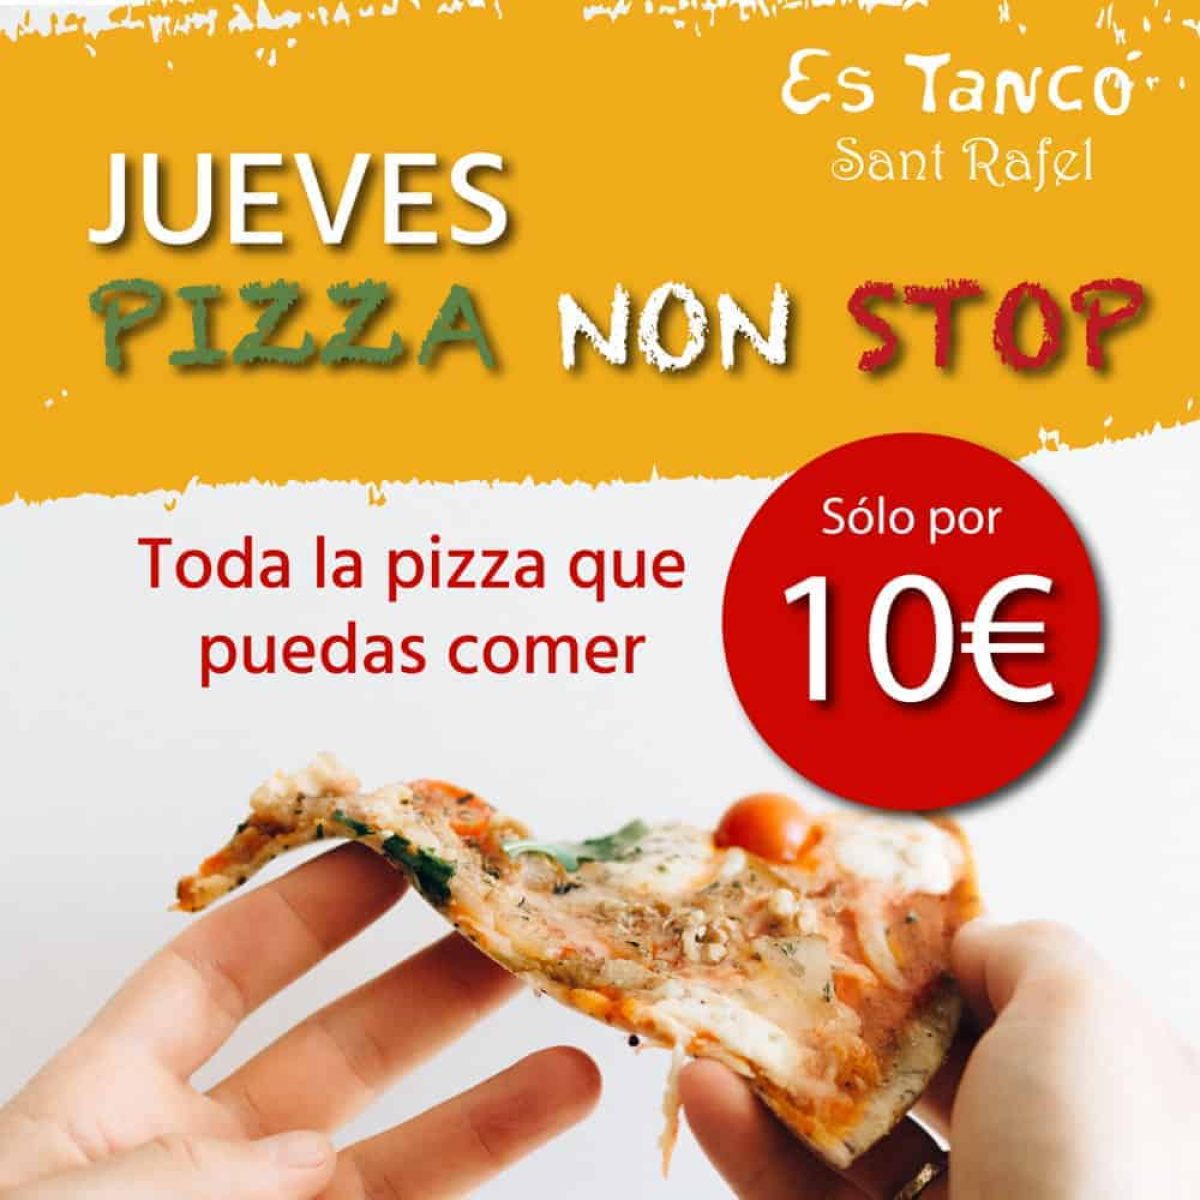 pizza pasta non stop és tanc Eivissa 00